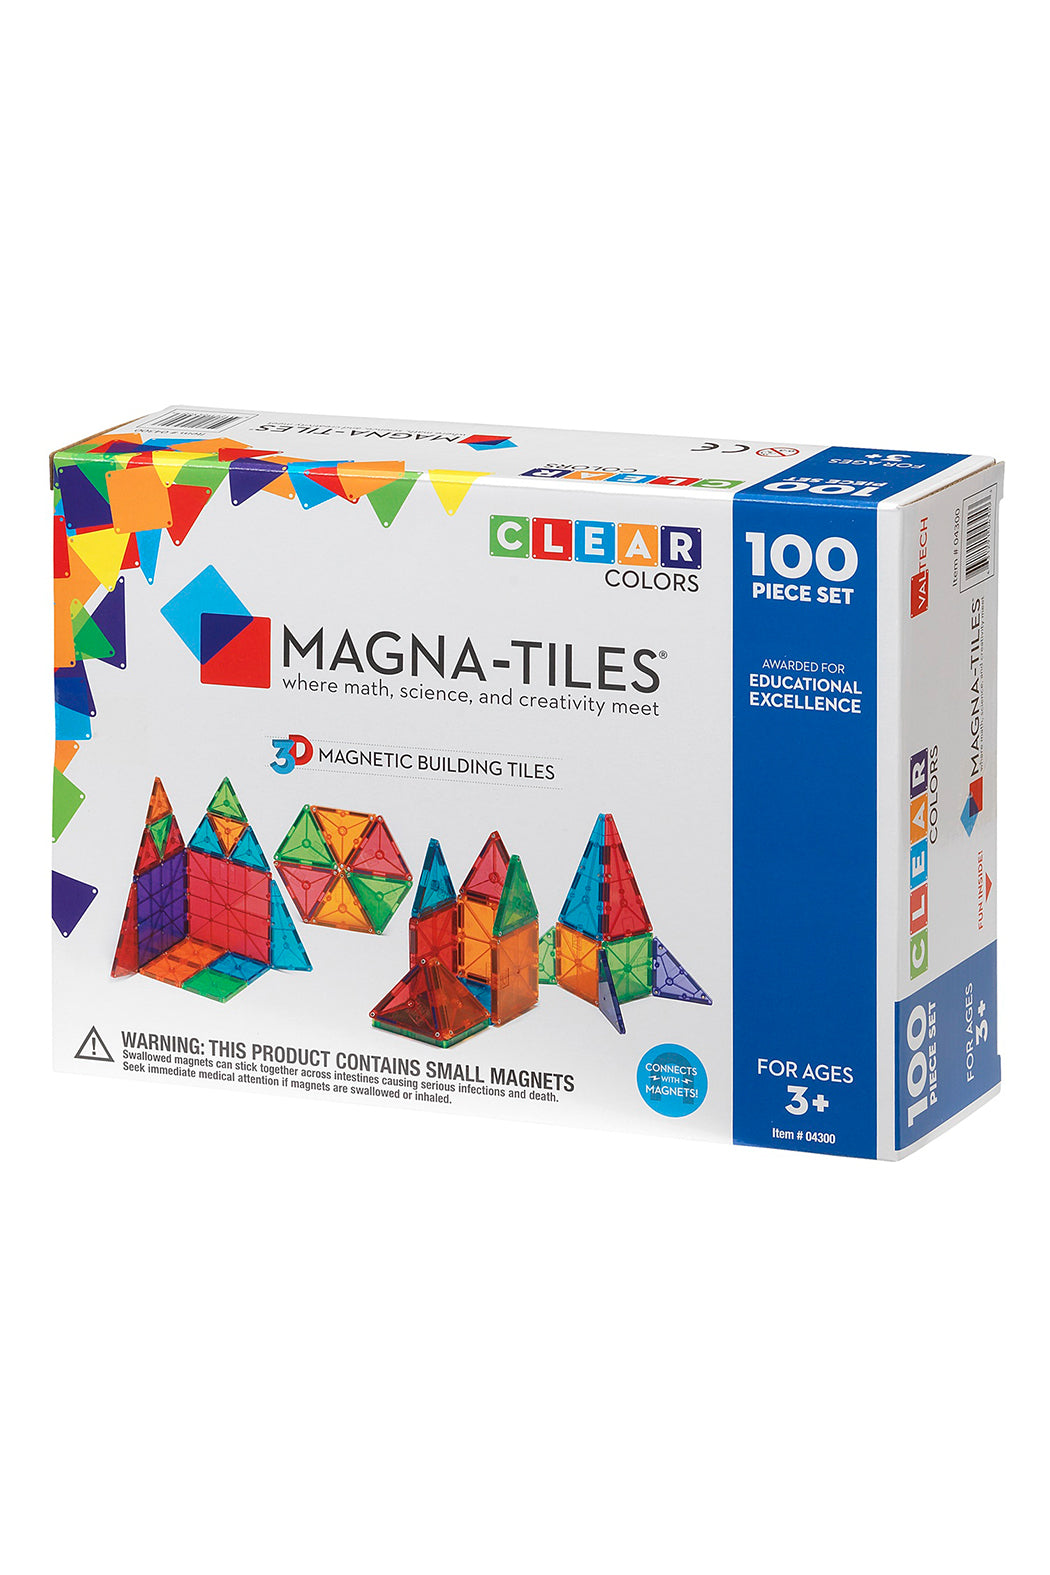 Valtech - MangaTiles Magna-Tiles Clear Colors 100 Piece Set